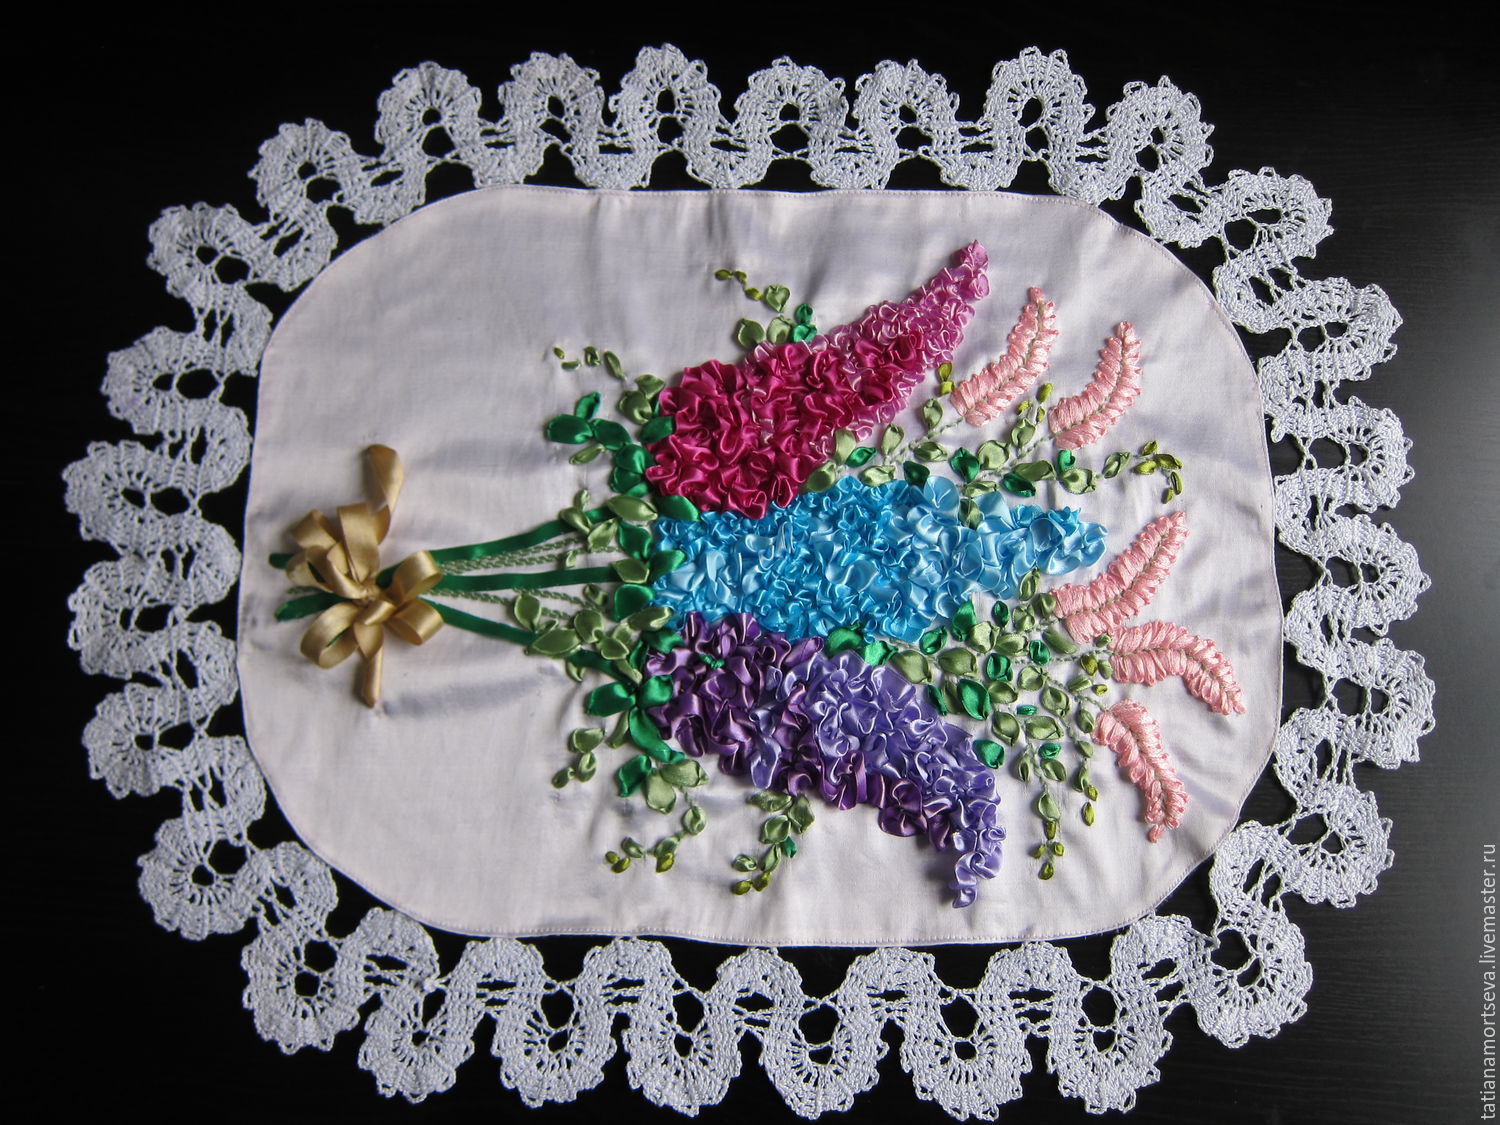 Салфетки из бисера своими руками: пошаговые схемы плетения для начинающих, фото, урок бисероплетения салфеток